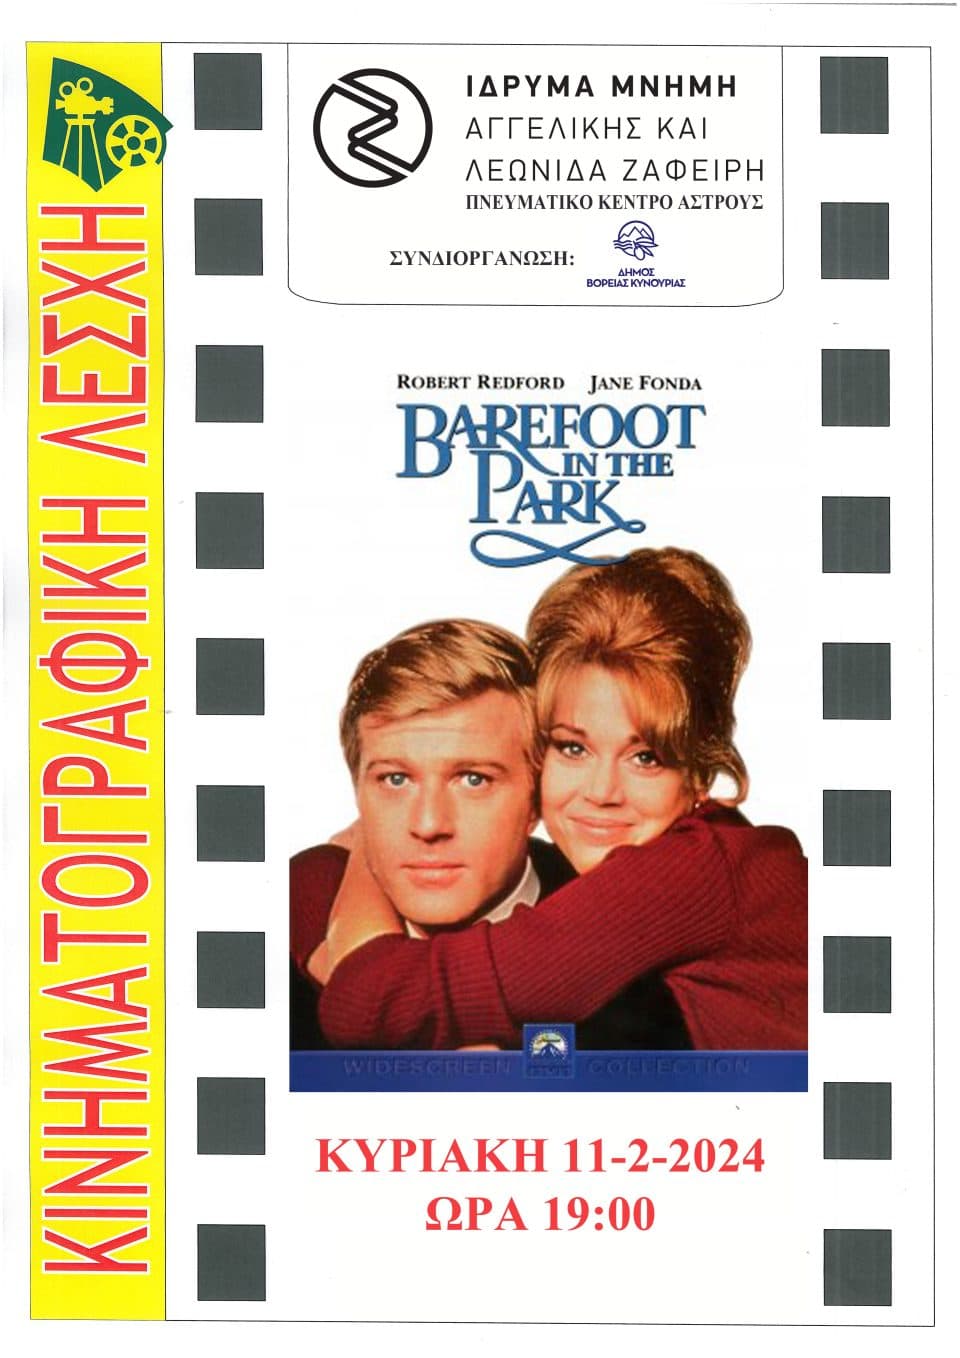 Με την προβολή της ταινίας «Barefoot in the Park» συνεχίζει η Κινηματογραφική Λέσχη Άστρους